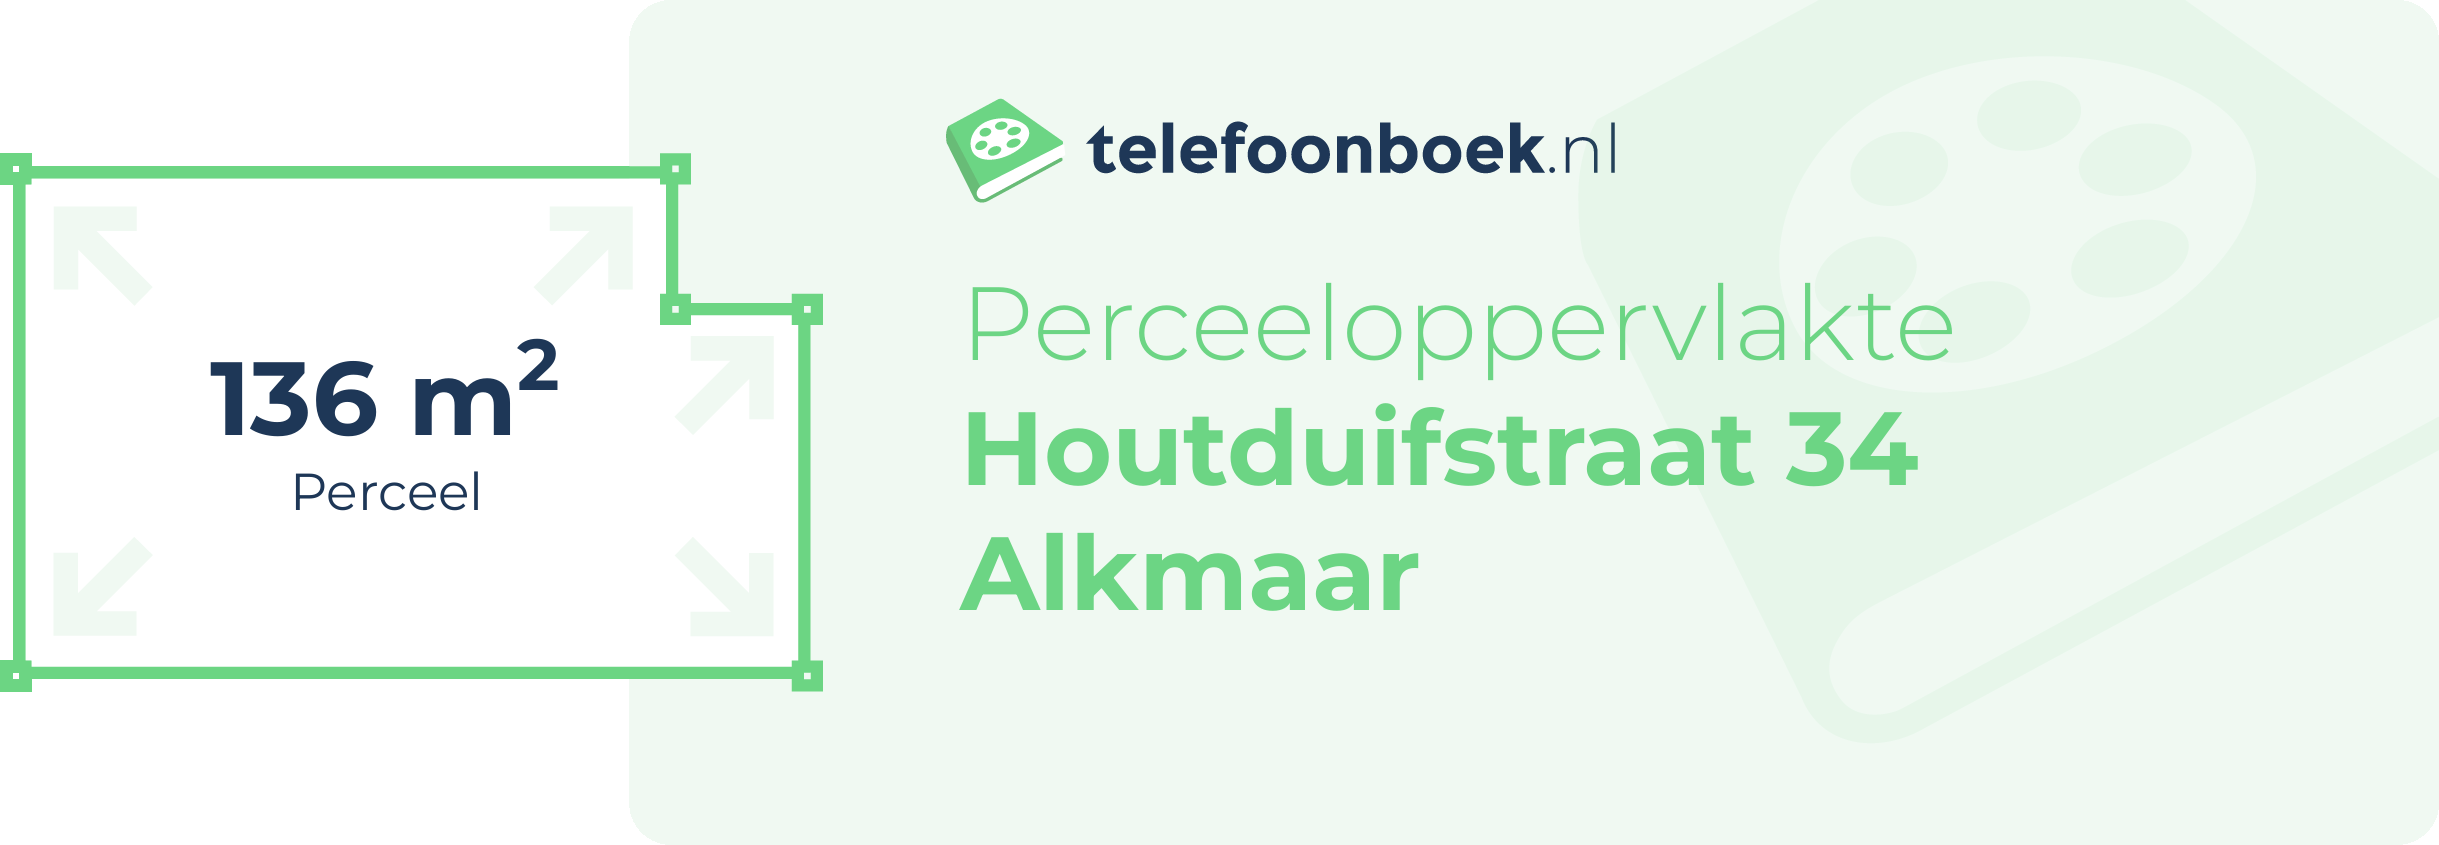 Perceeloppervlakte Houtduifstraat 34 Alkmaar